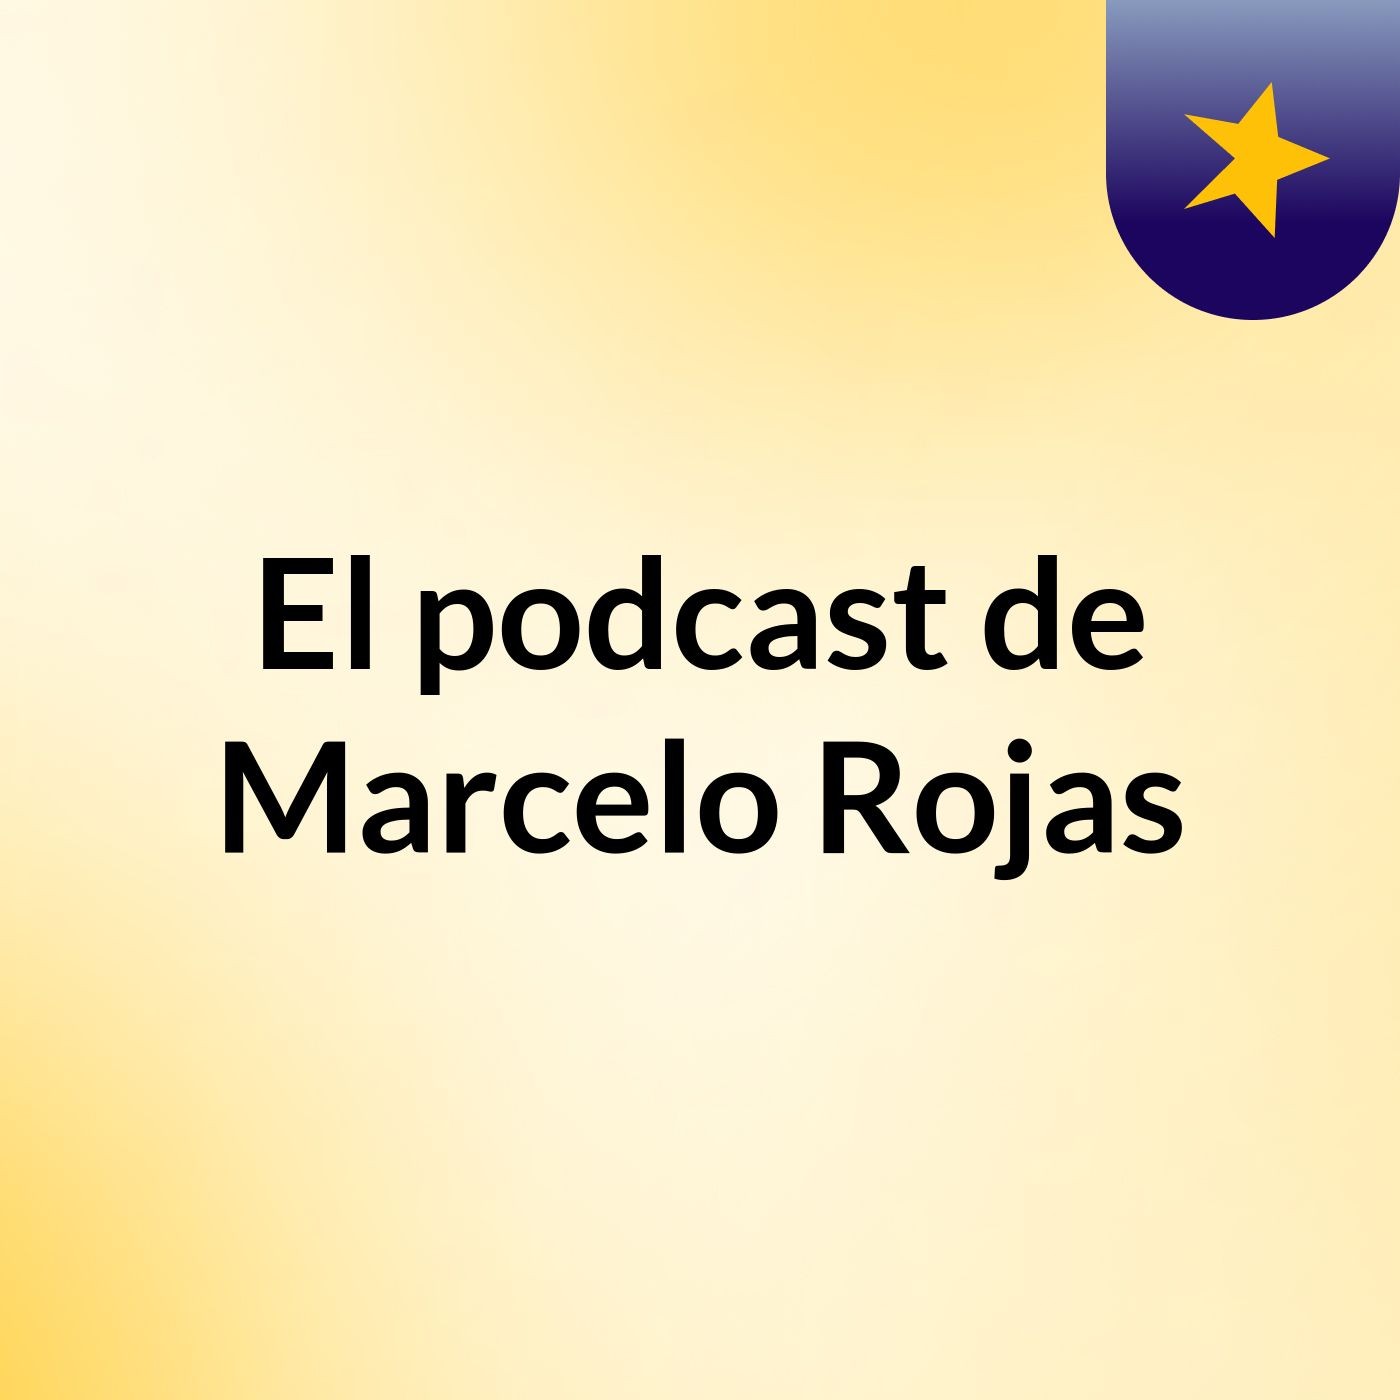 El podcast de Marcelo Rojas